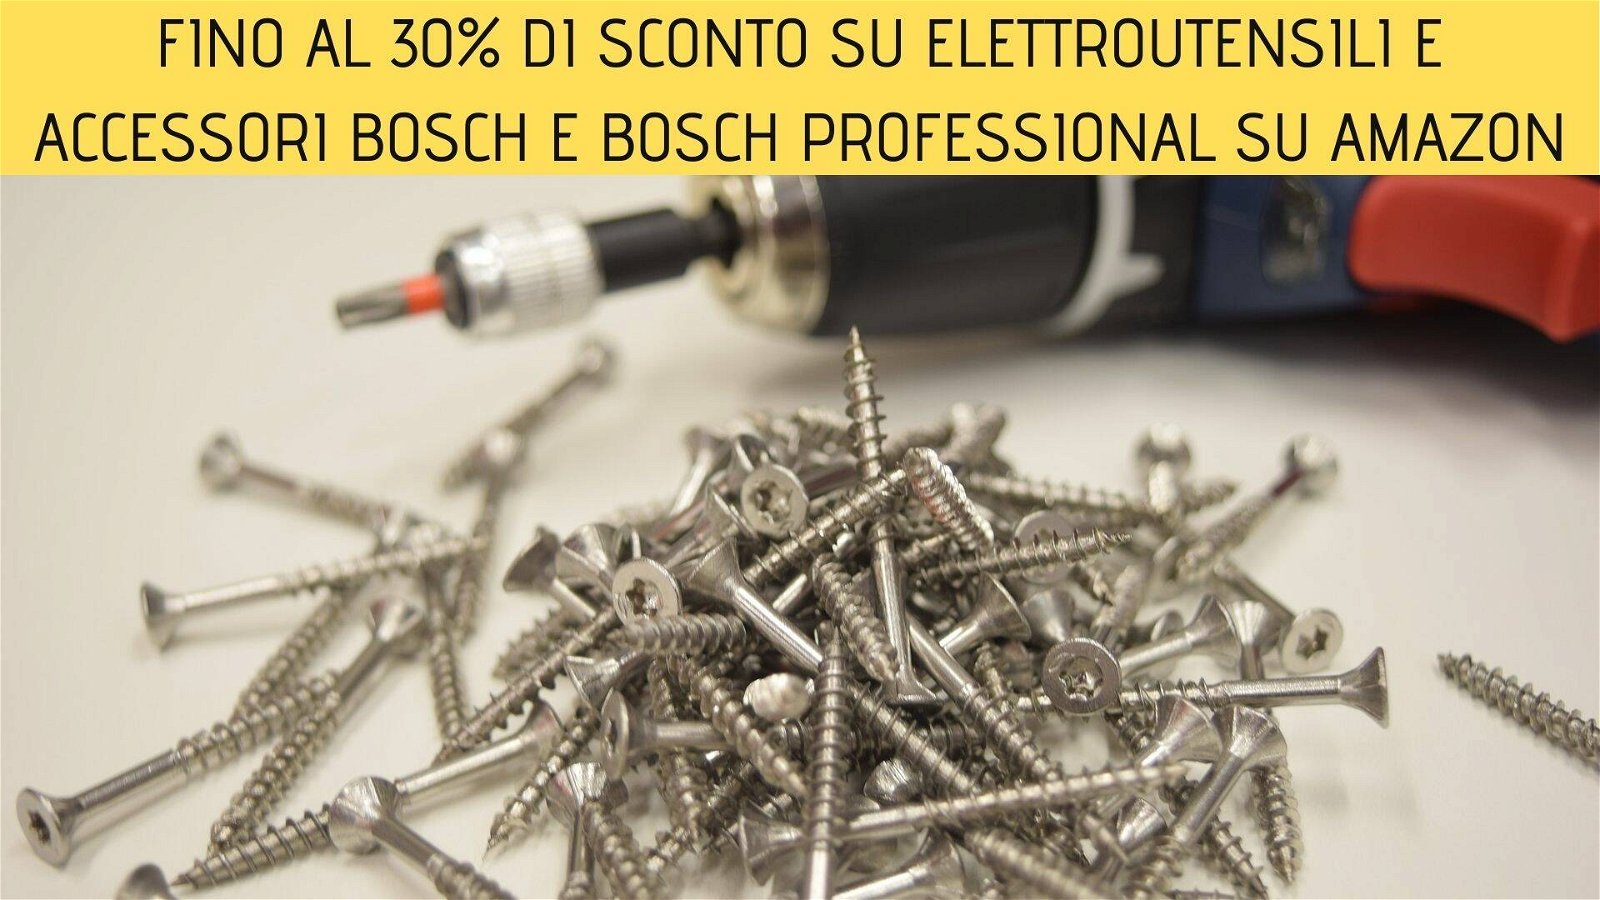 Immagine di Fino al 30% di sconto su elettroutensili e accessori Bosch e Bosch Professional su Amazon